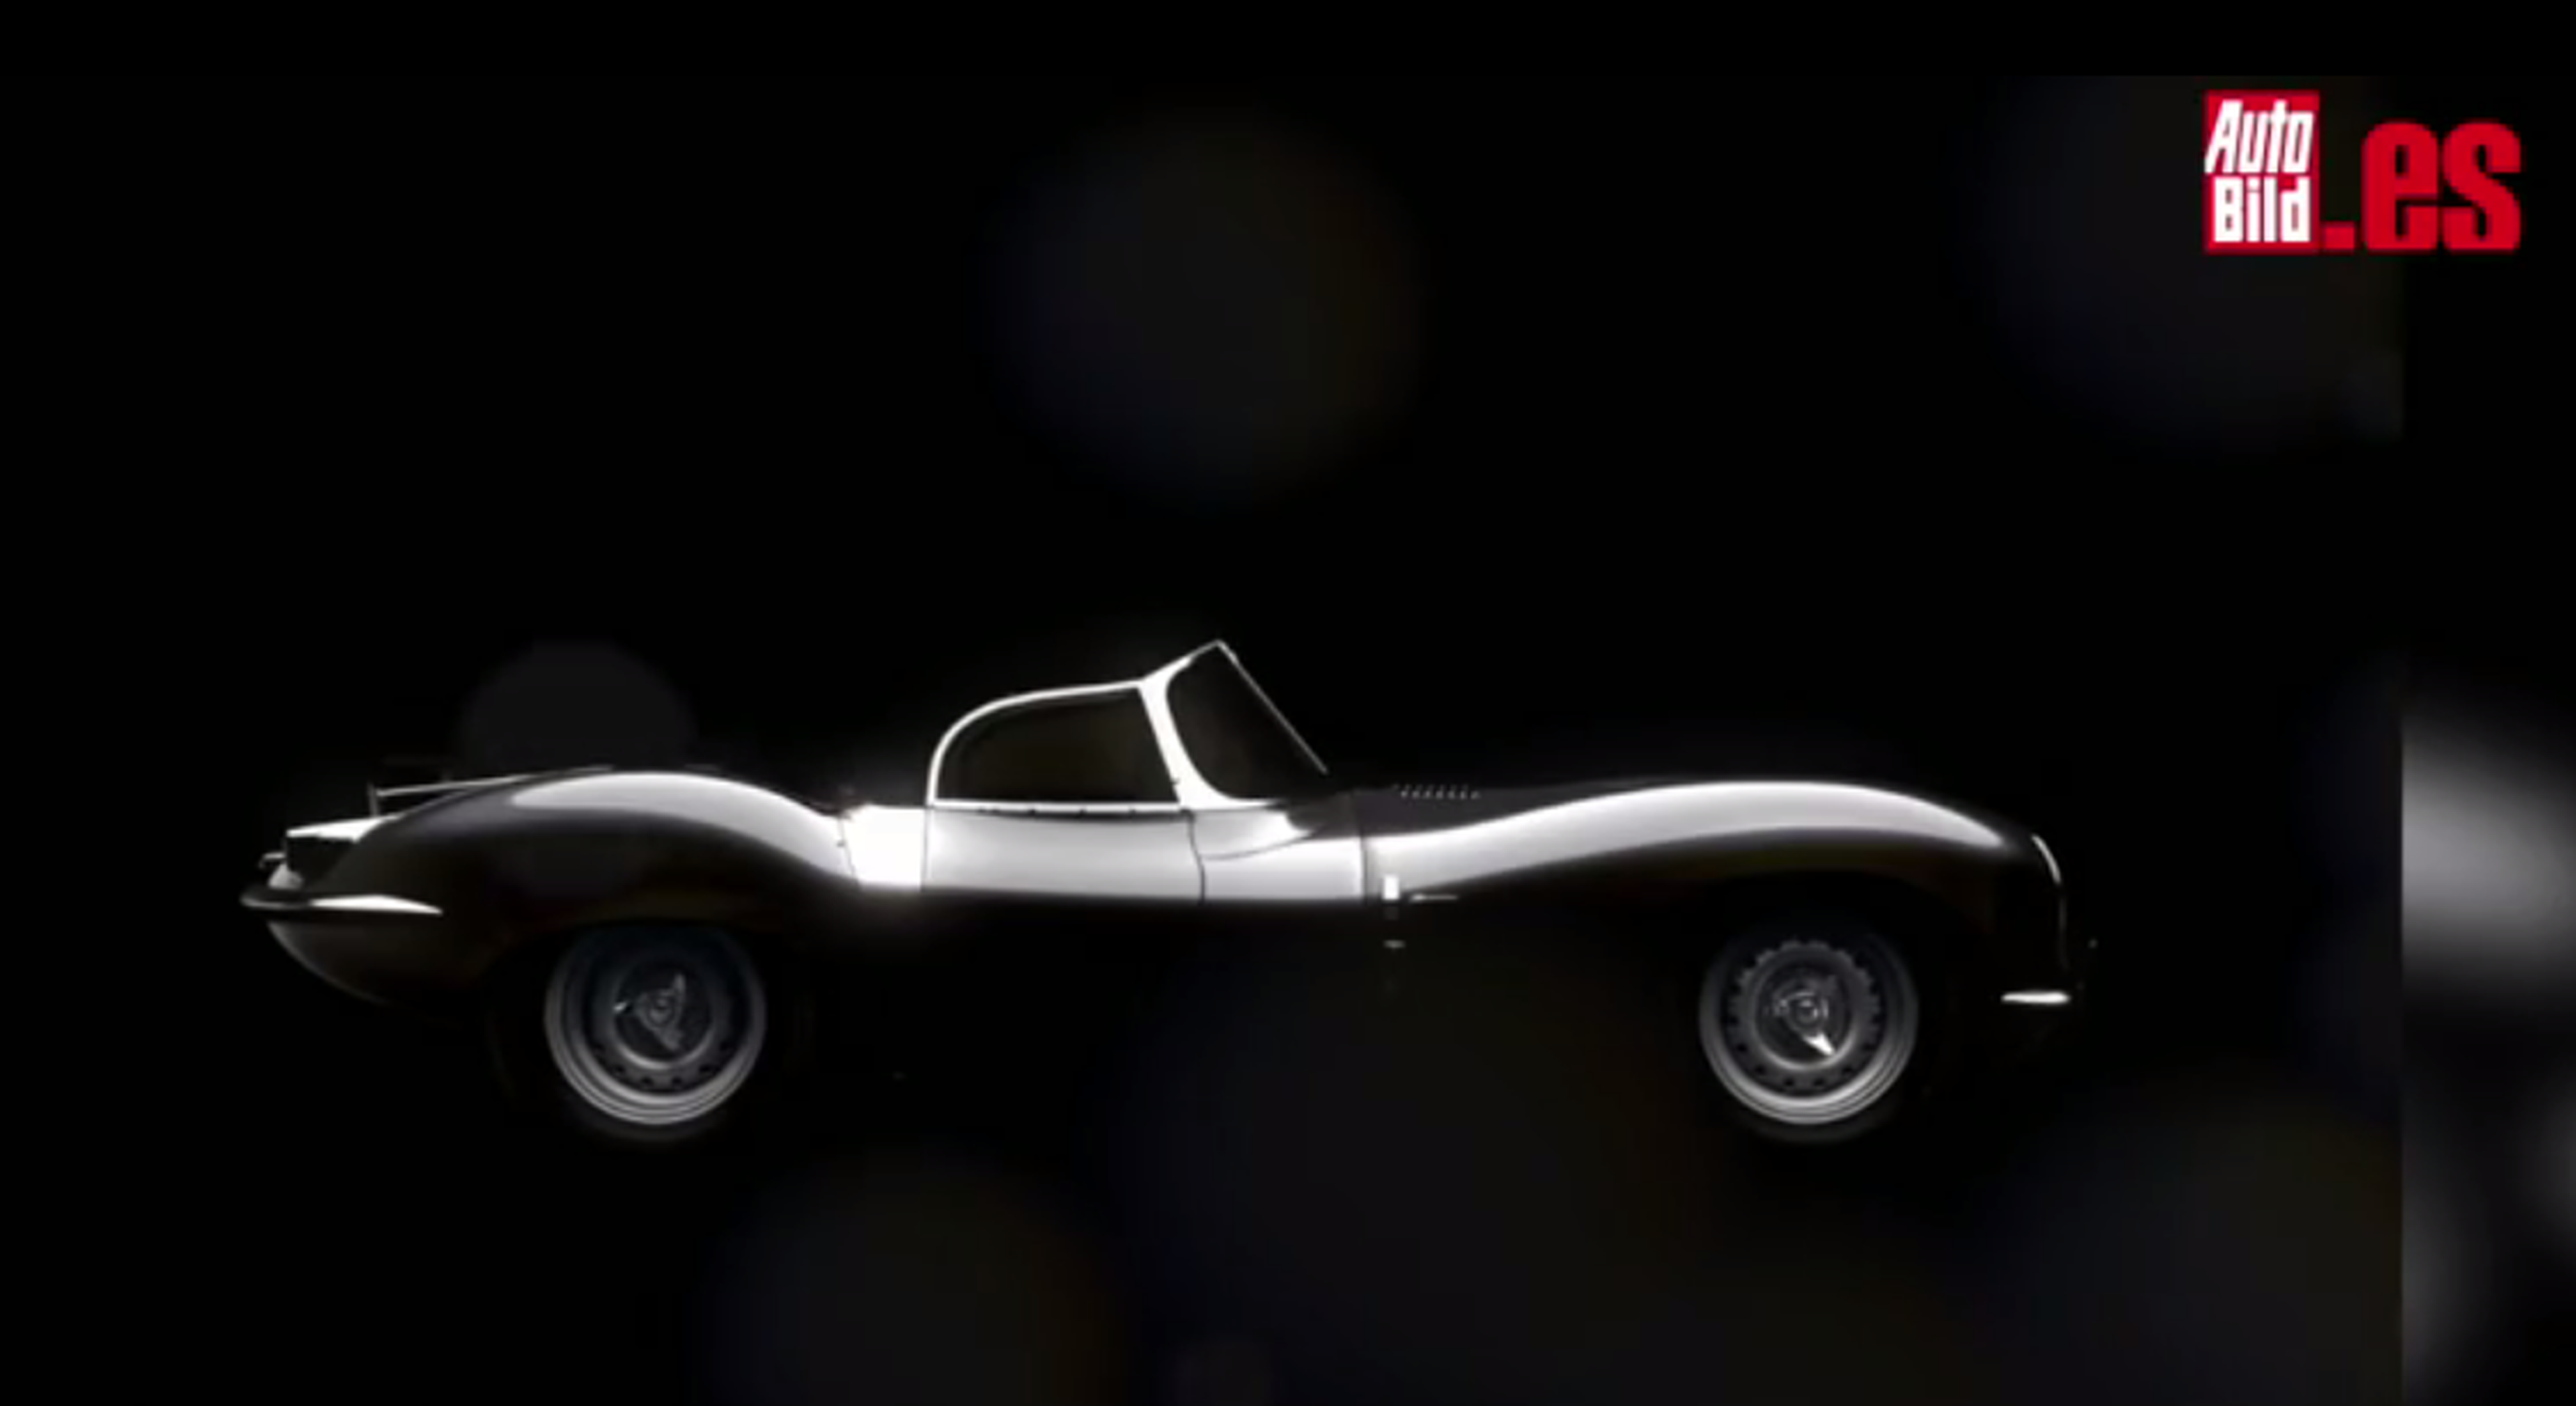 El Jaguar XKSS resurgirá de sus cenizas 59 años después